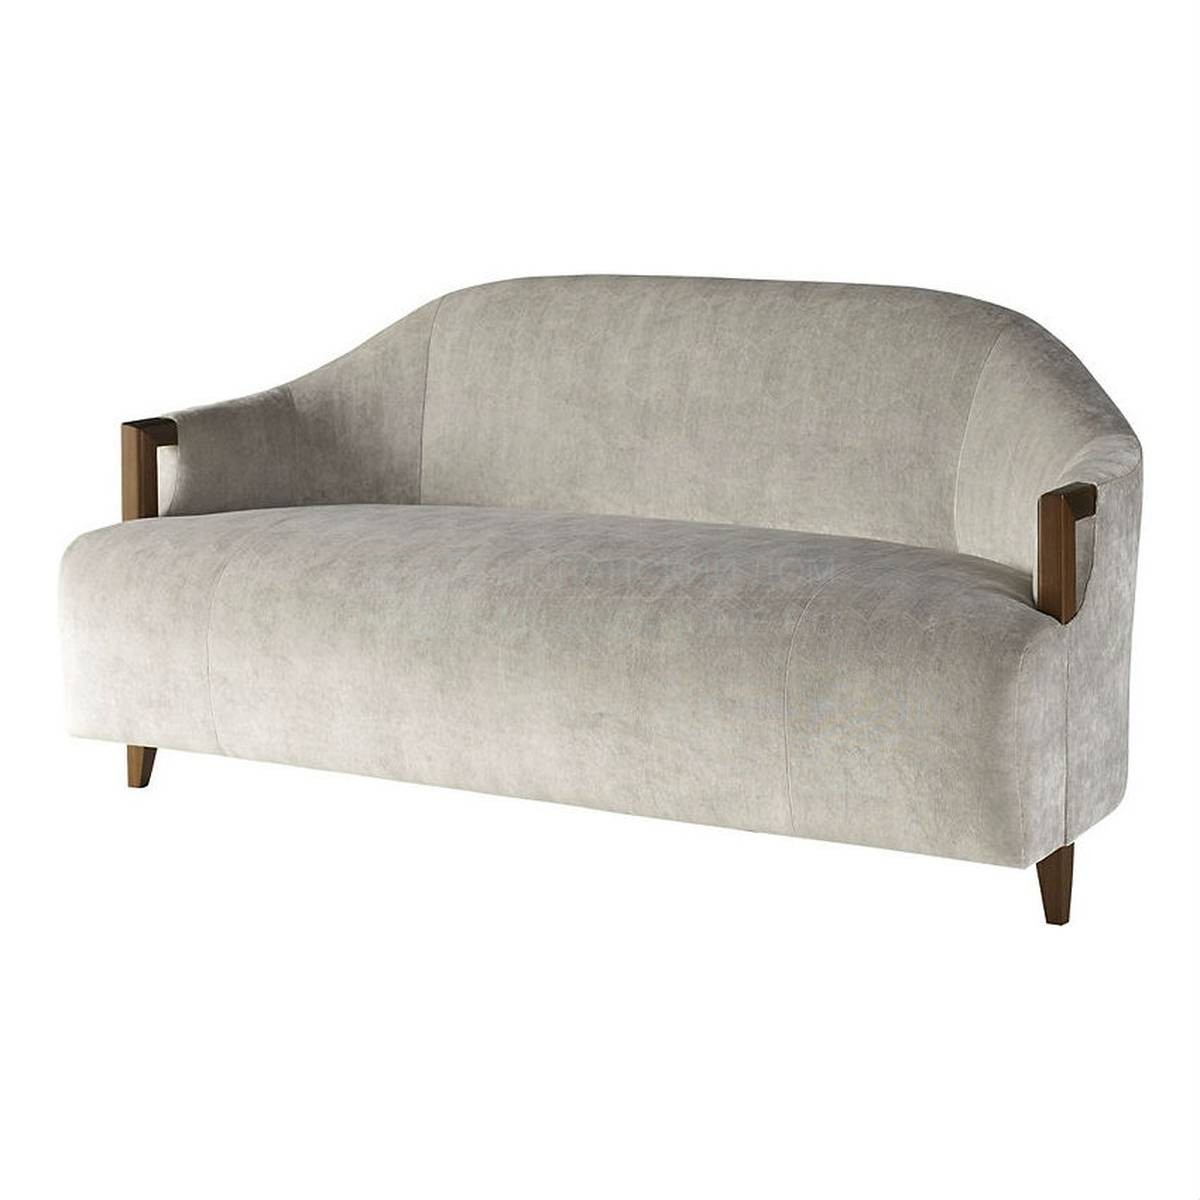 Прямой диван Pistil sofa из США фабрики BAKER